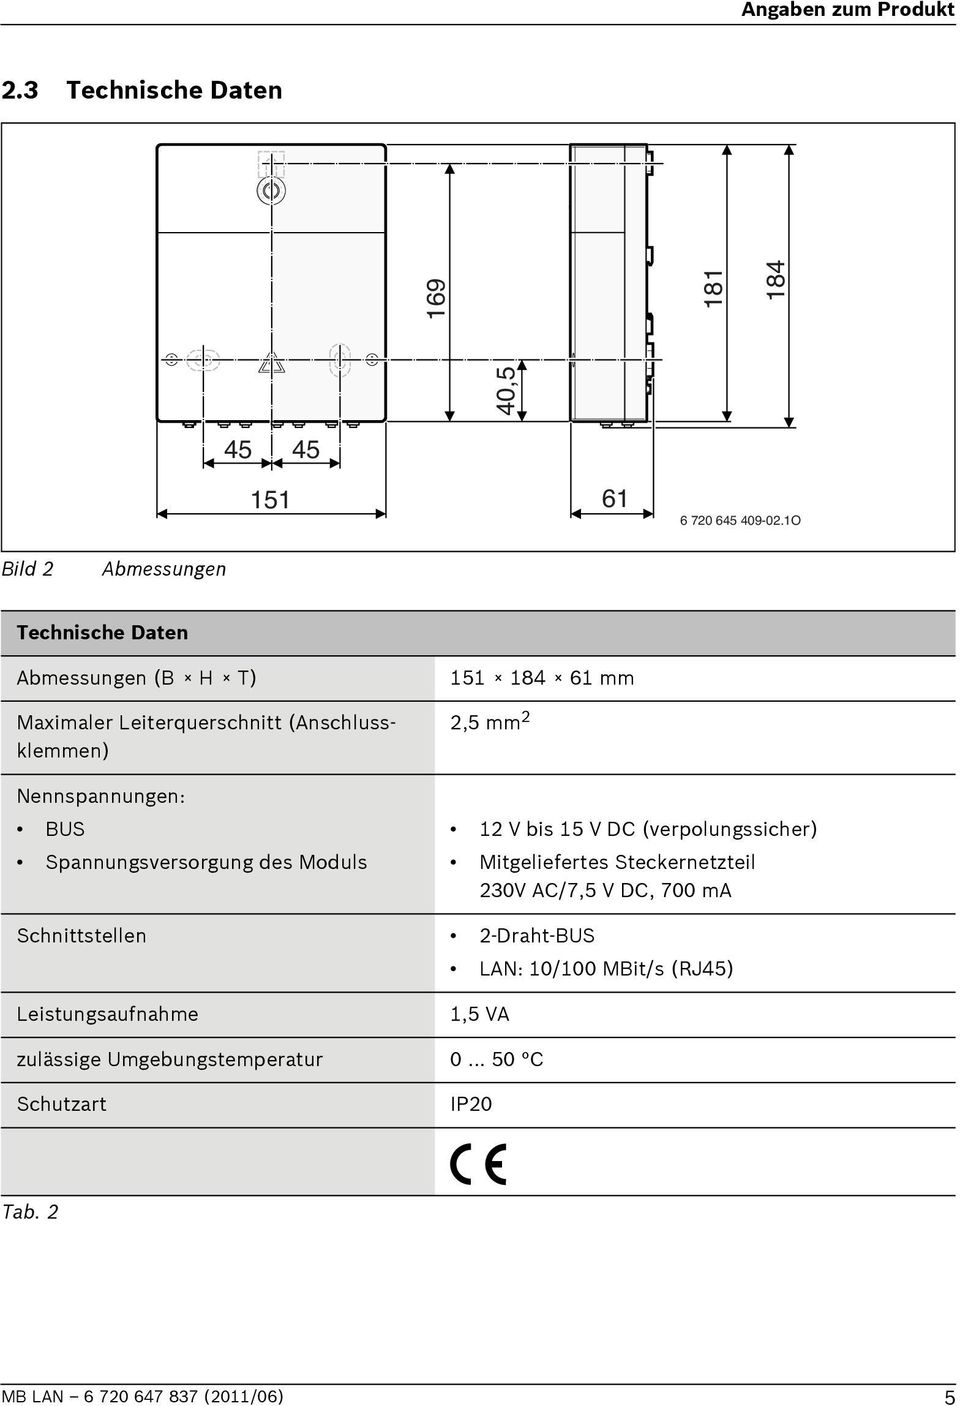 Nennspannungen: US Spannungsversorgung des Moduls 1 V bis 15 V DC (verpolungssicher) Mitgeliefertes Steckernetzteil 30V AC/7,5 V